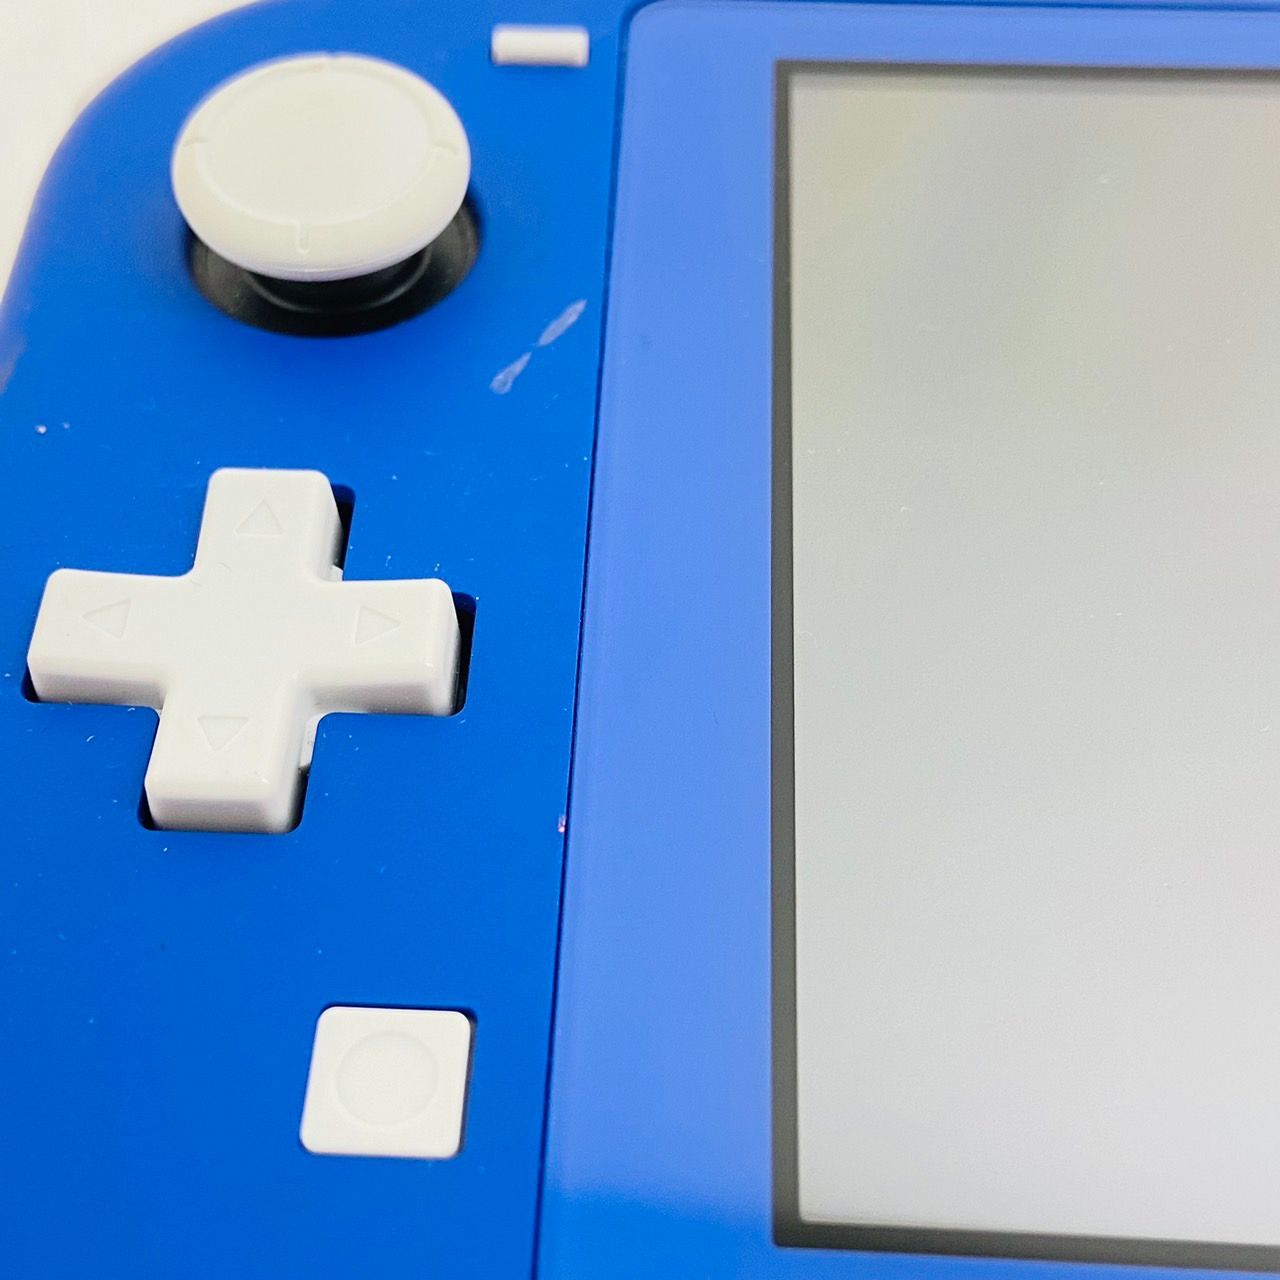 フレッシュシリーズ新登場 Nintendo Switch Lite ブルー 本体のみ